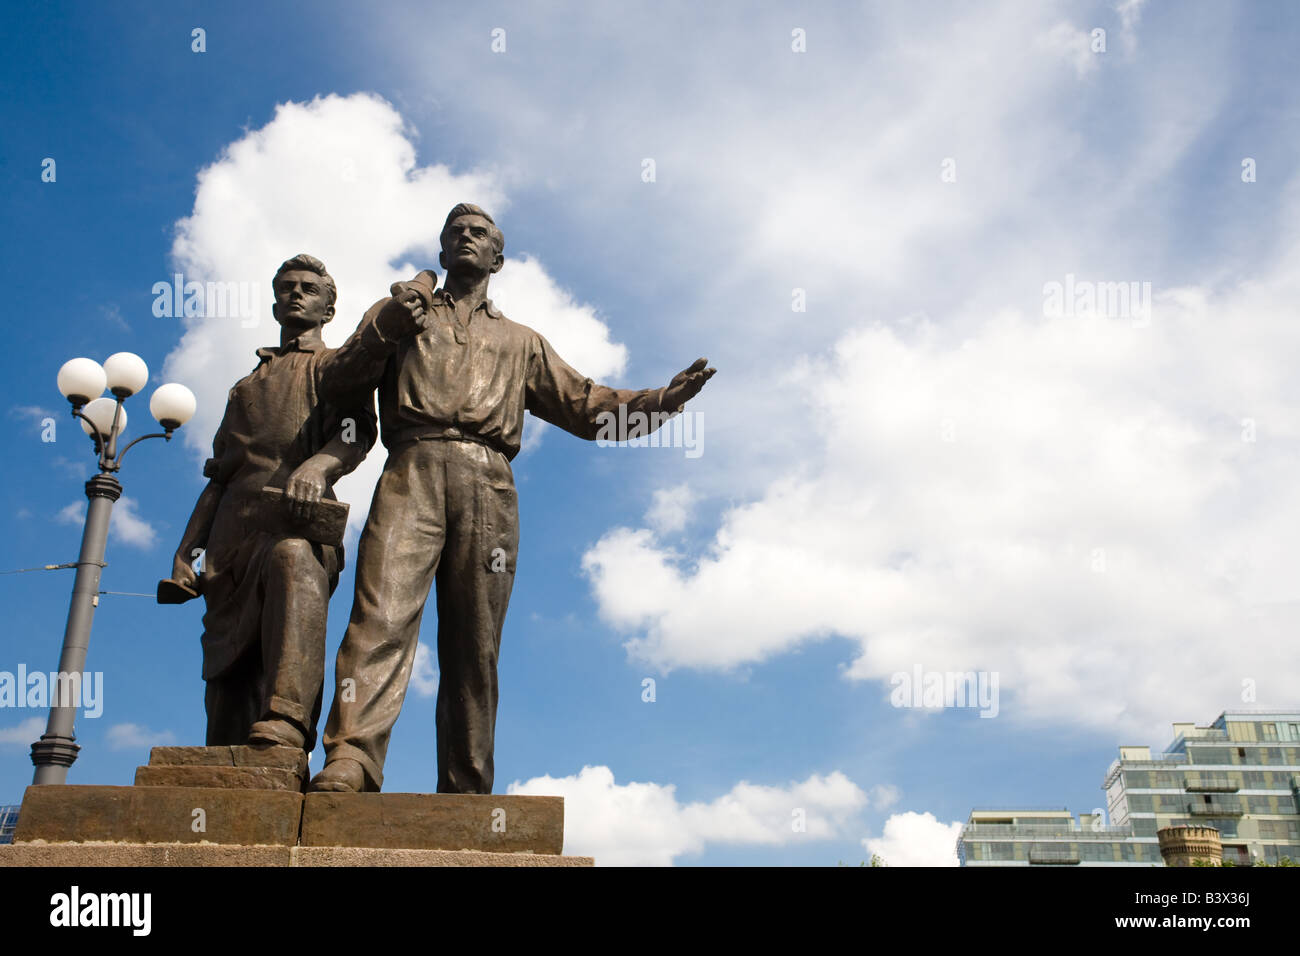 Zwei bronze Sozialrealismus Skulpturen Geste kühn vor Gebäuden und einem blauen Himmel in Vilnius Litauen über die Grüne Brücke. Stockfoto